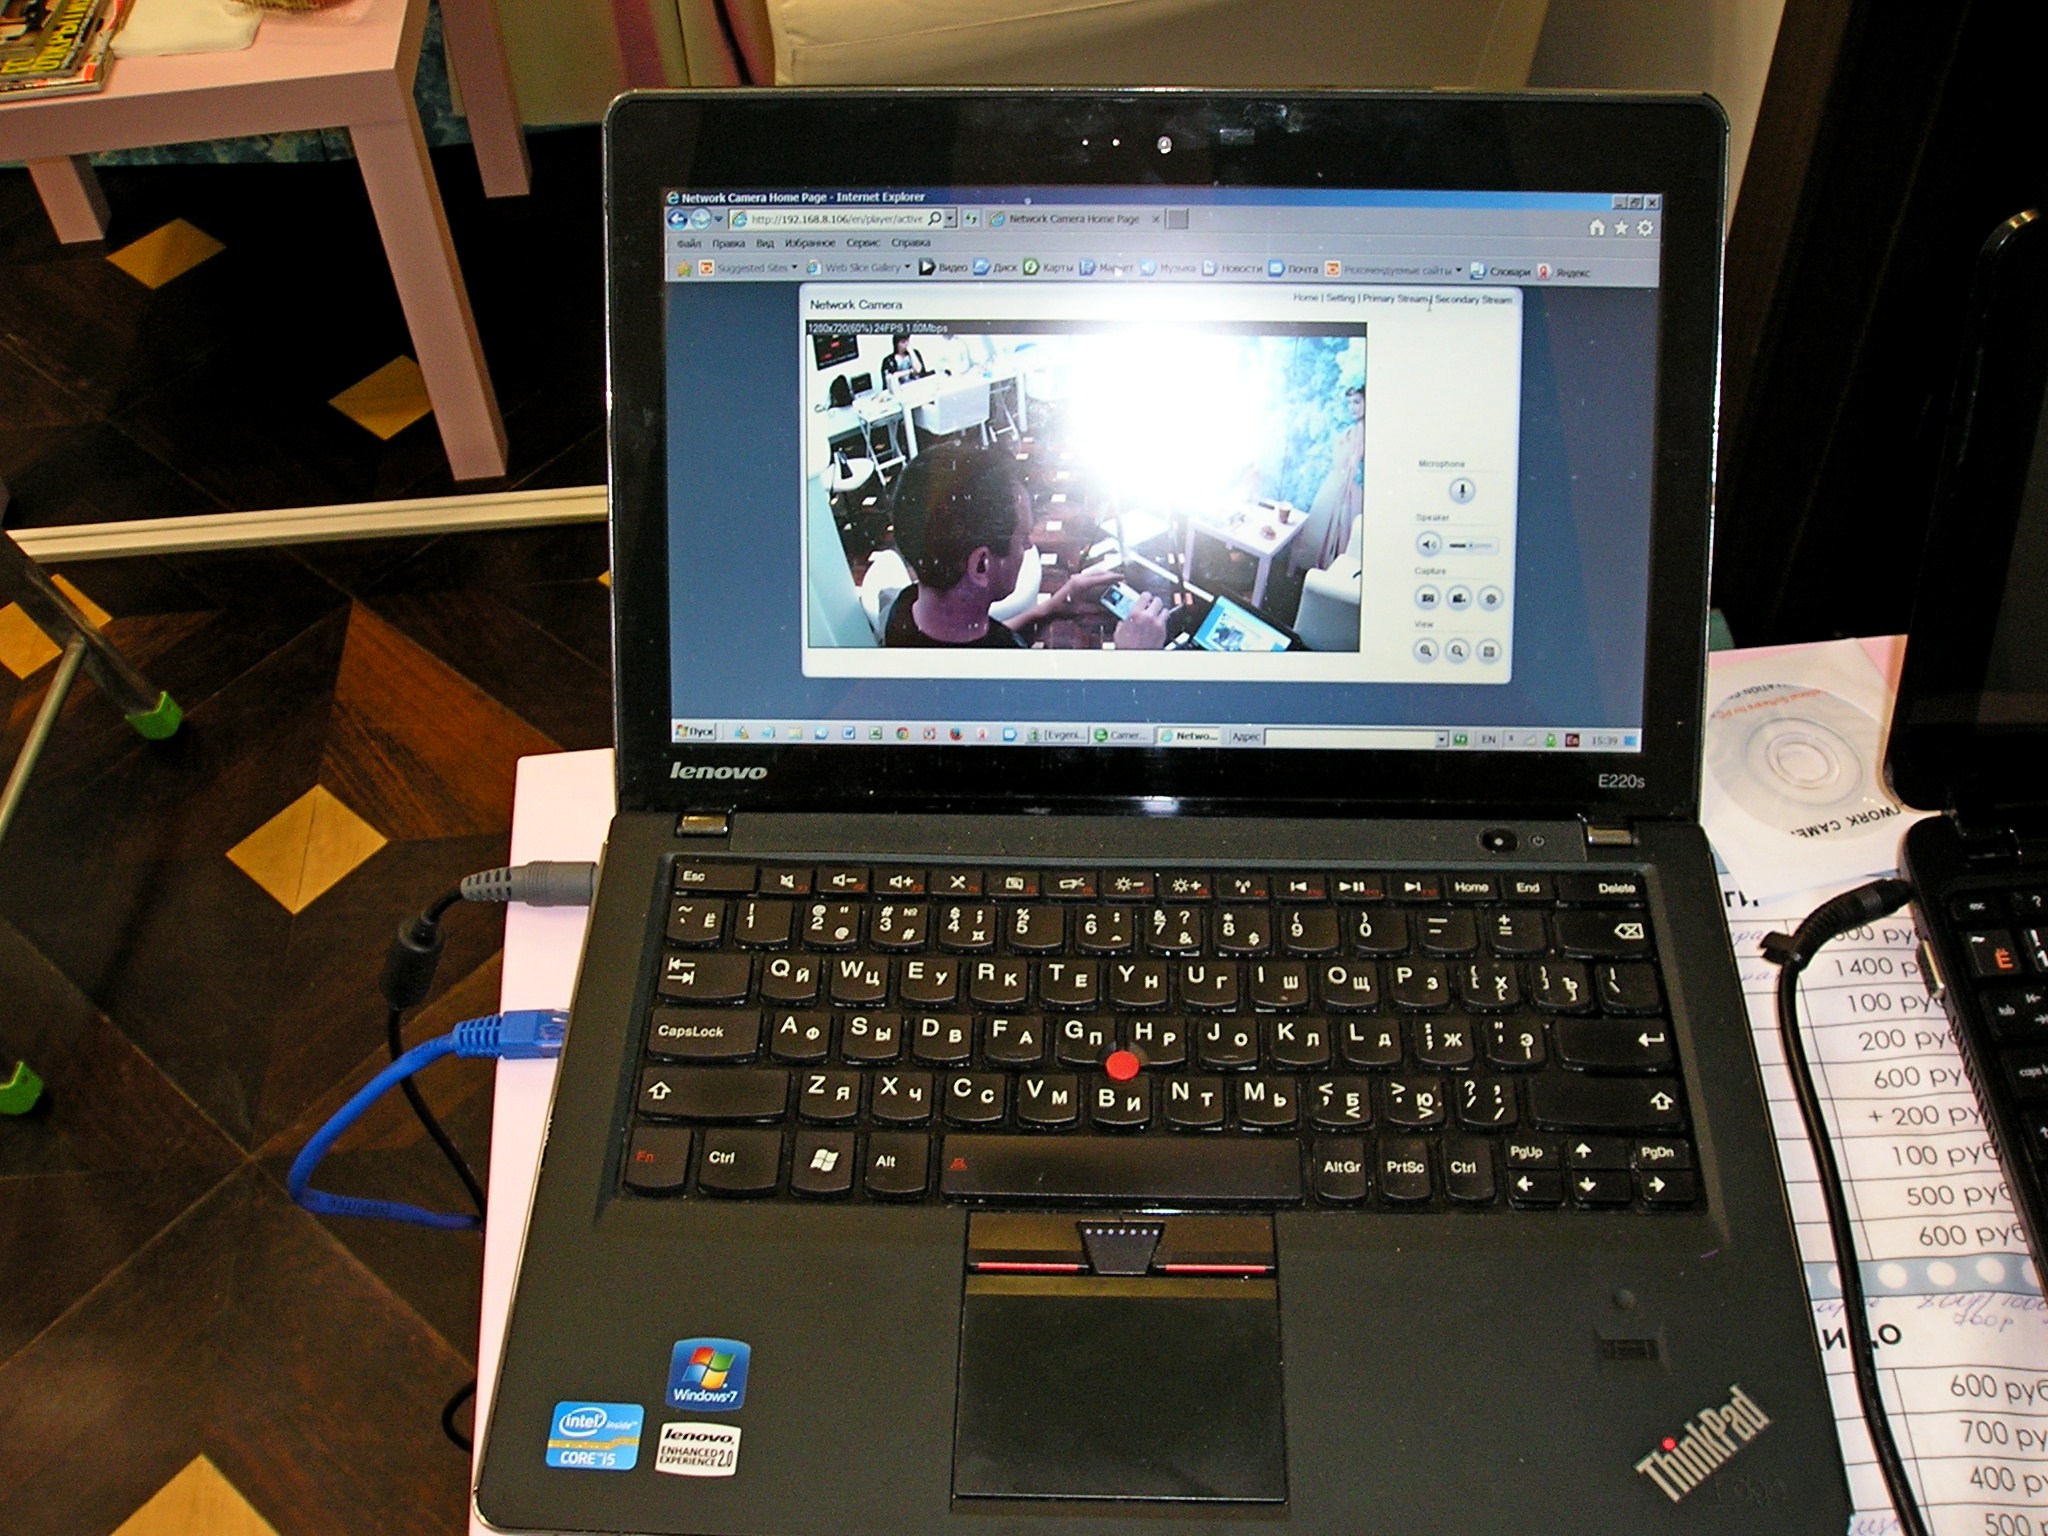 установка камеры Линк-223 вид с камеры на компьютере